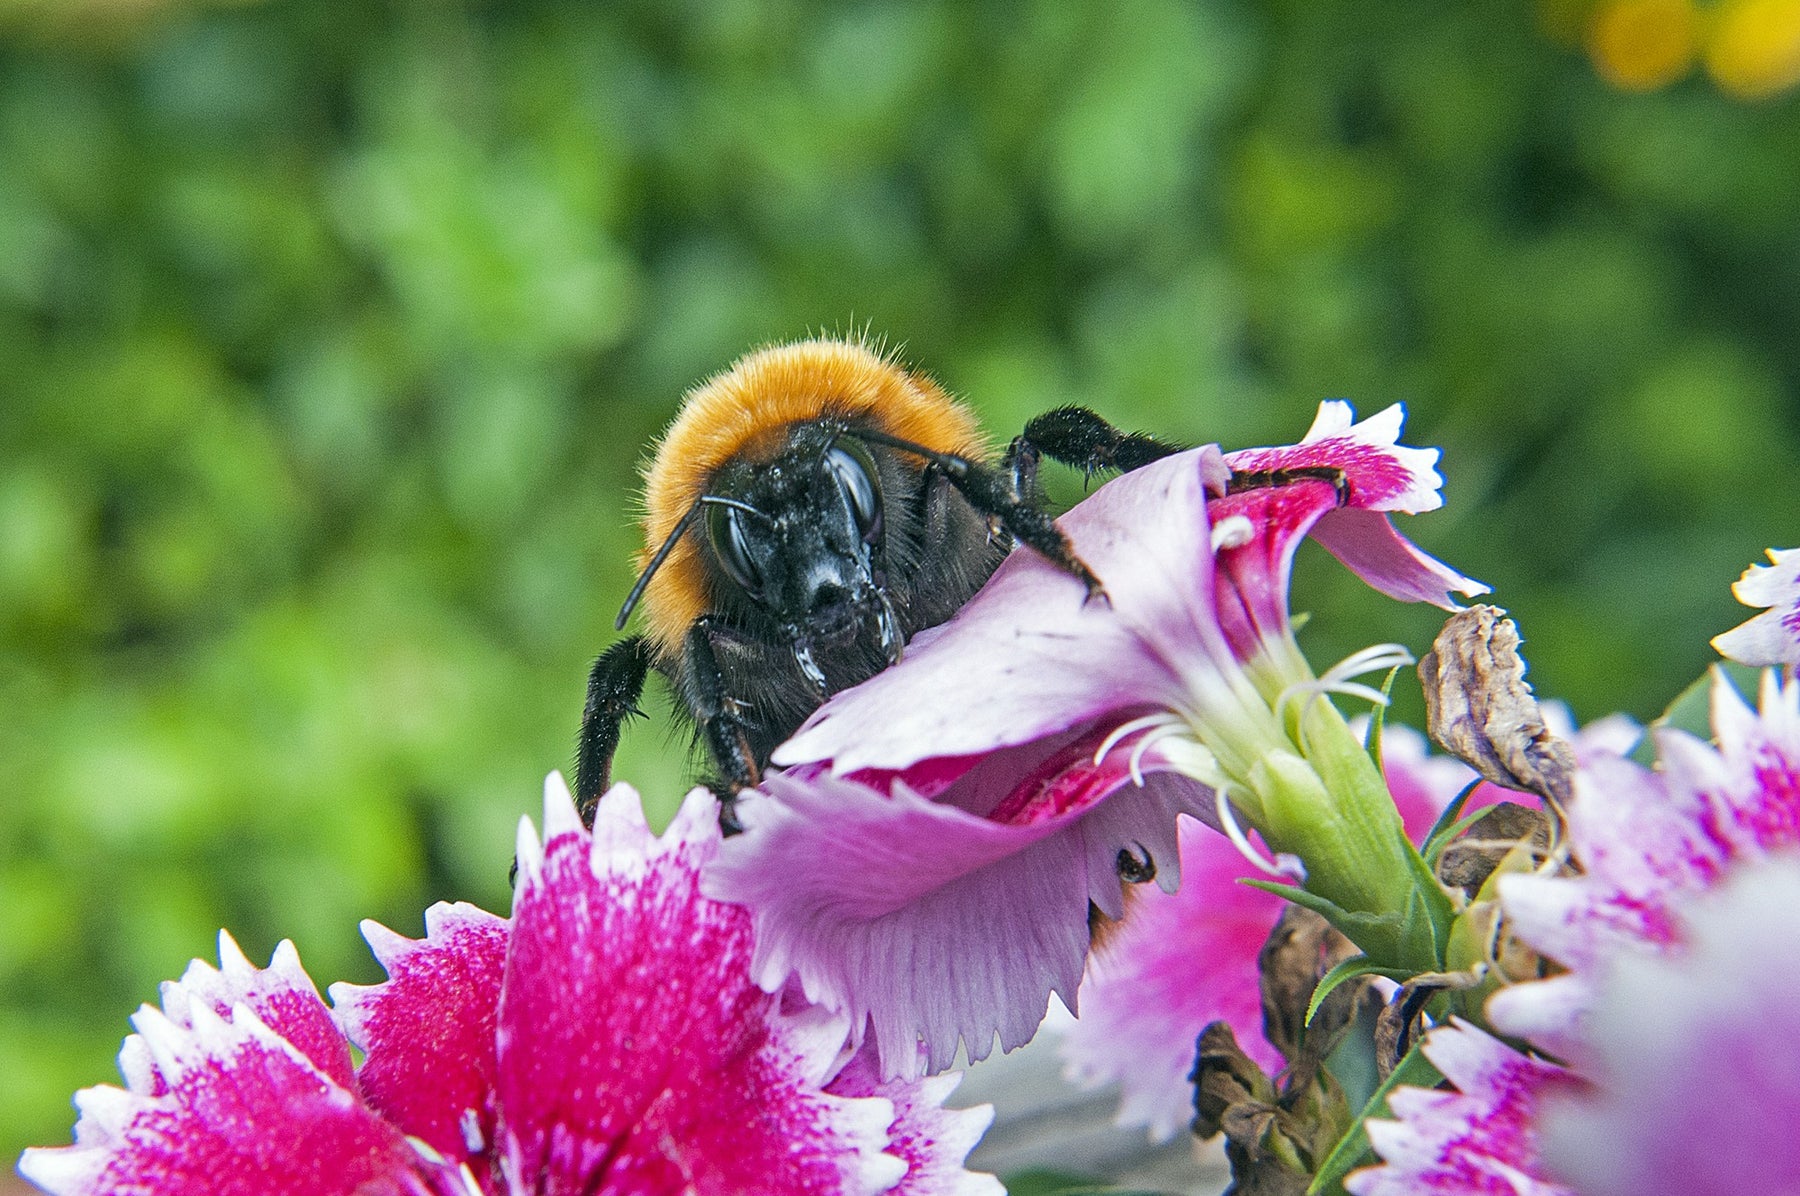 Australian Native Bees in Your Garden